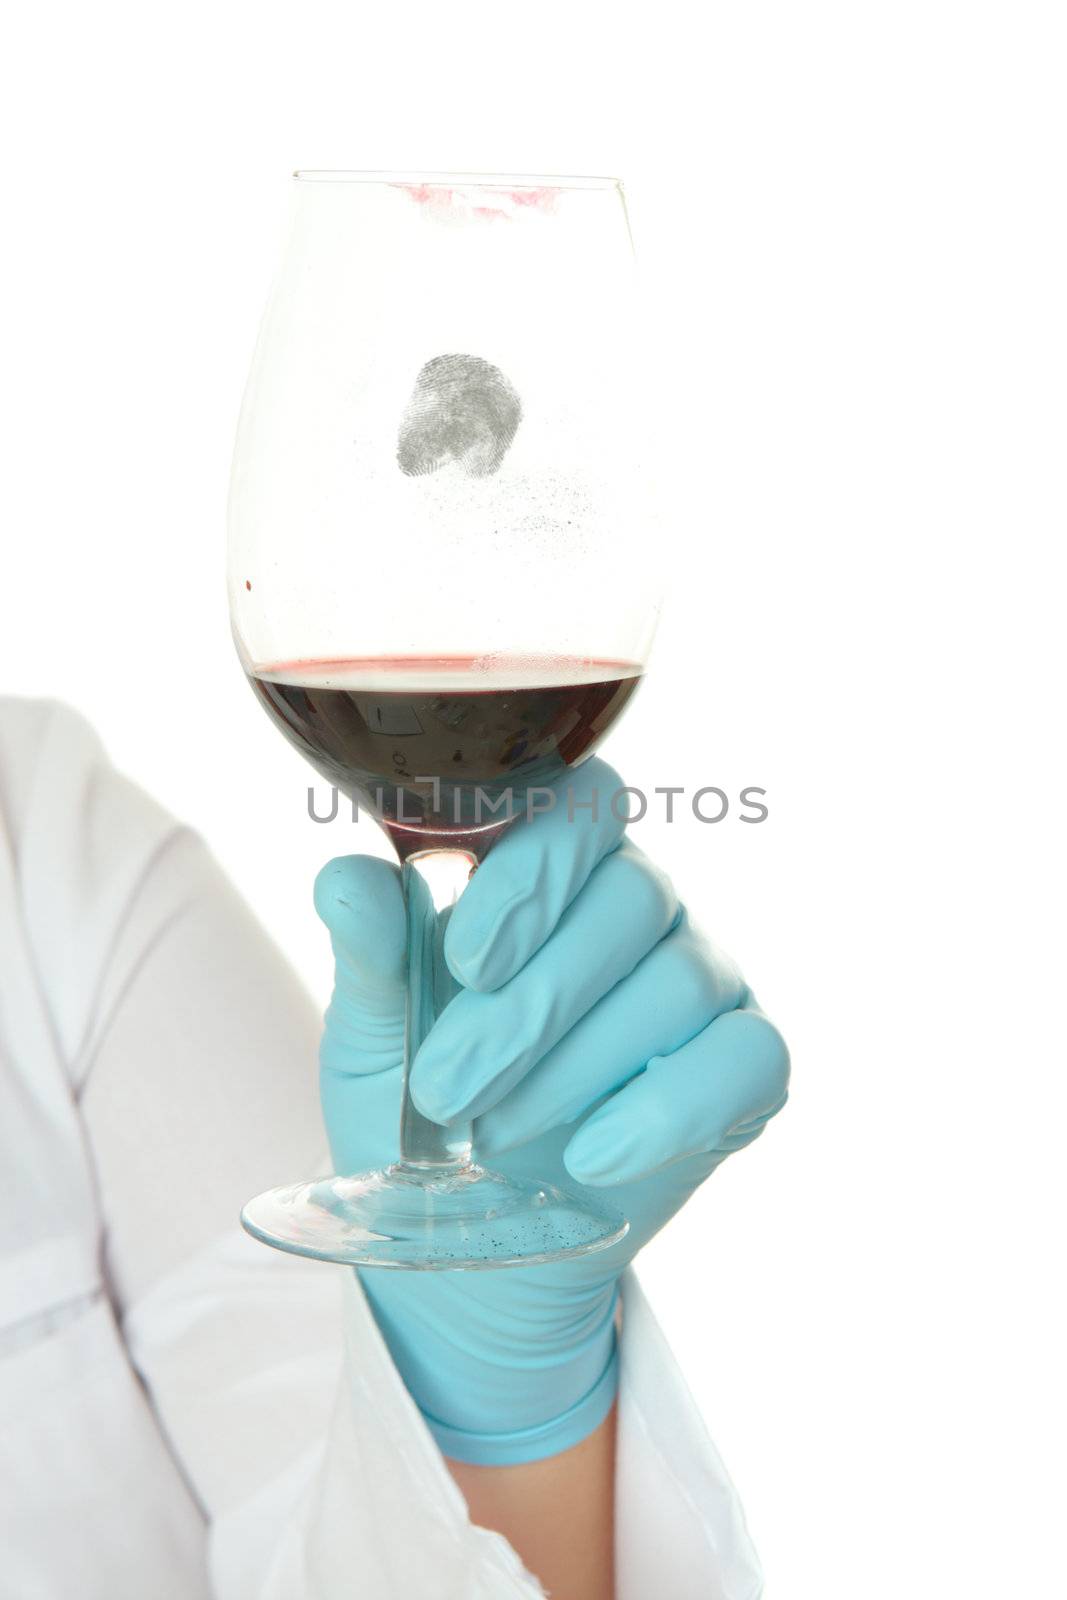 Fingerprint on wine glass by lovleah